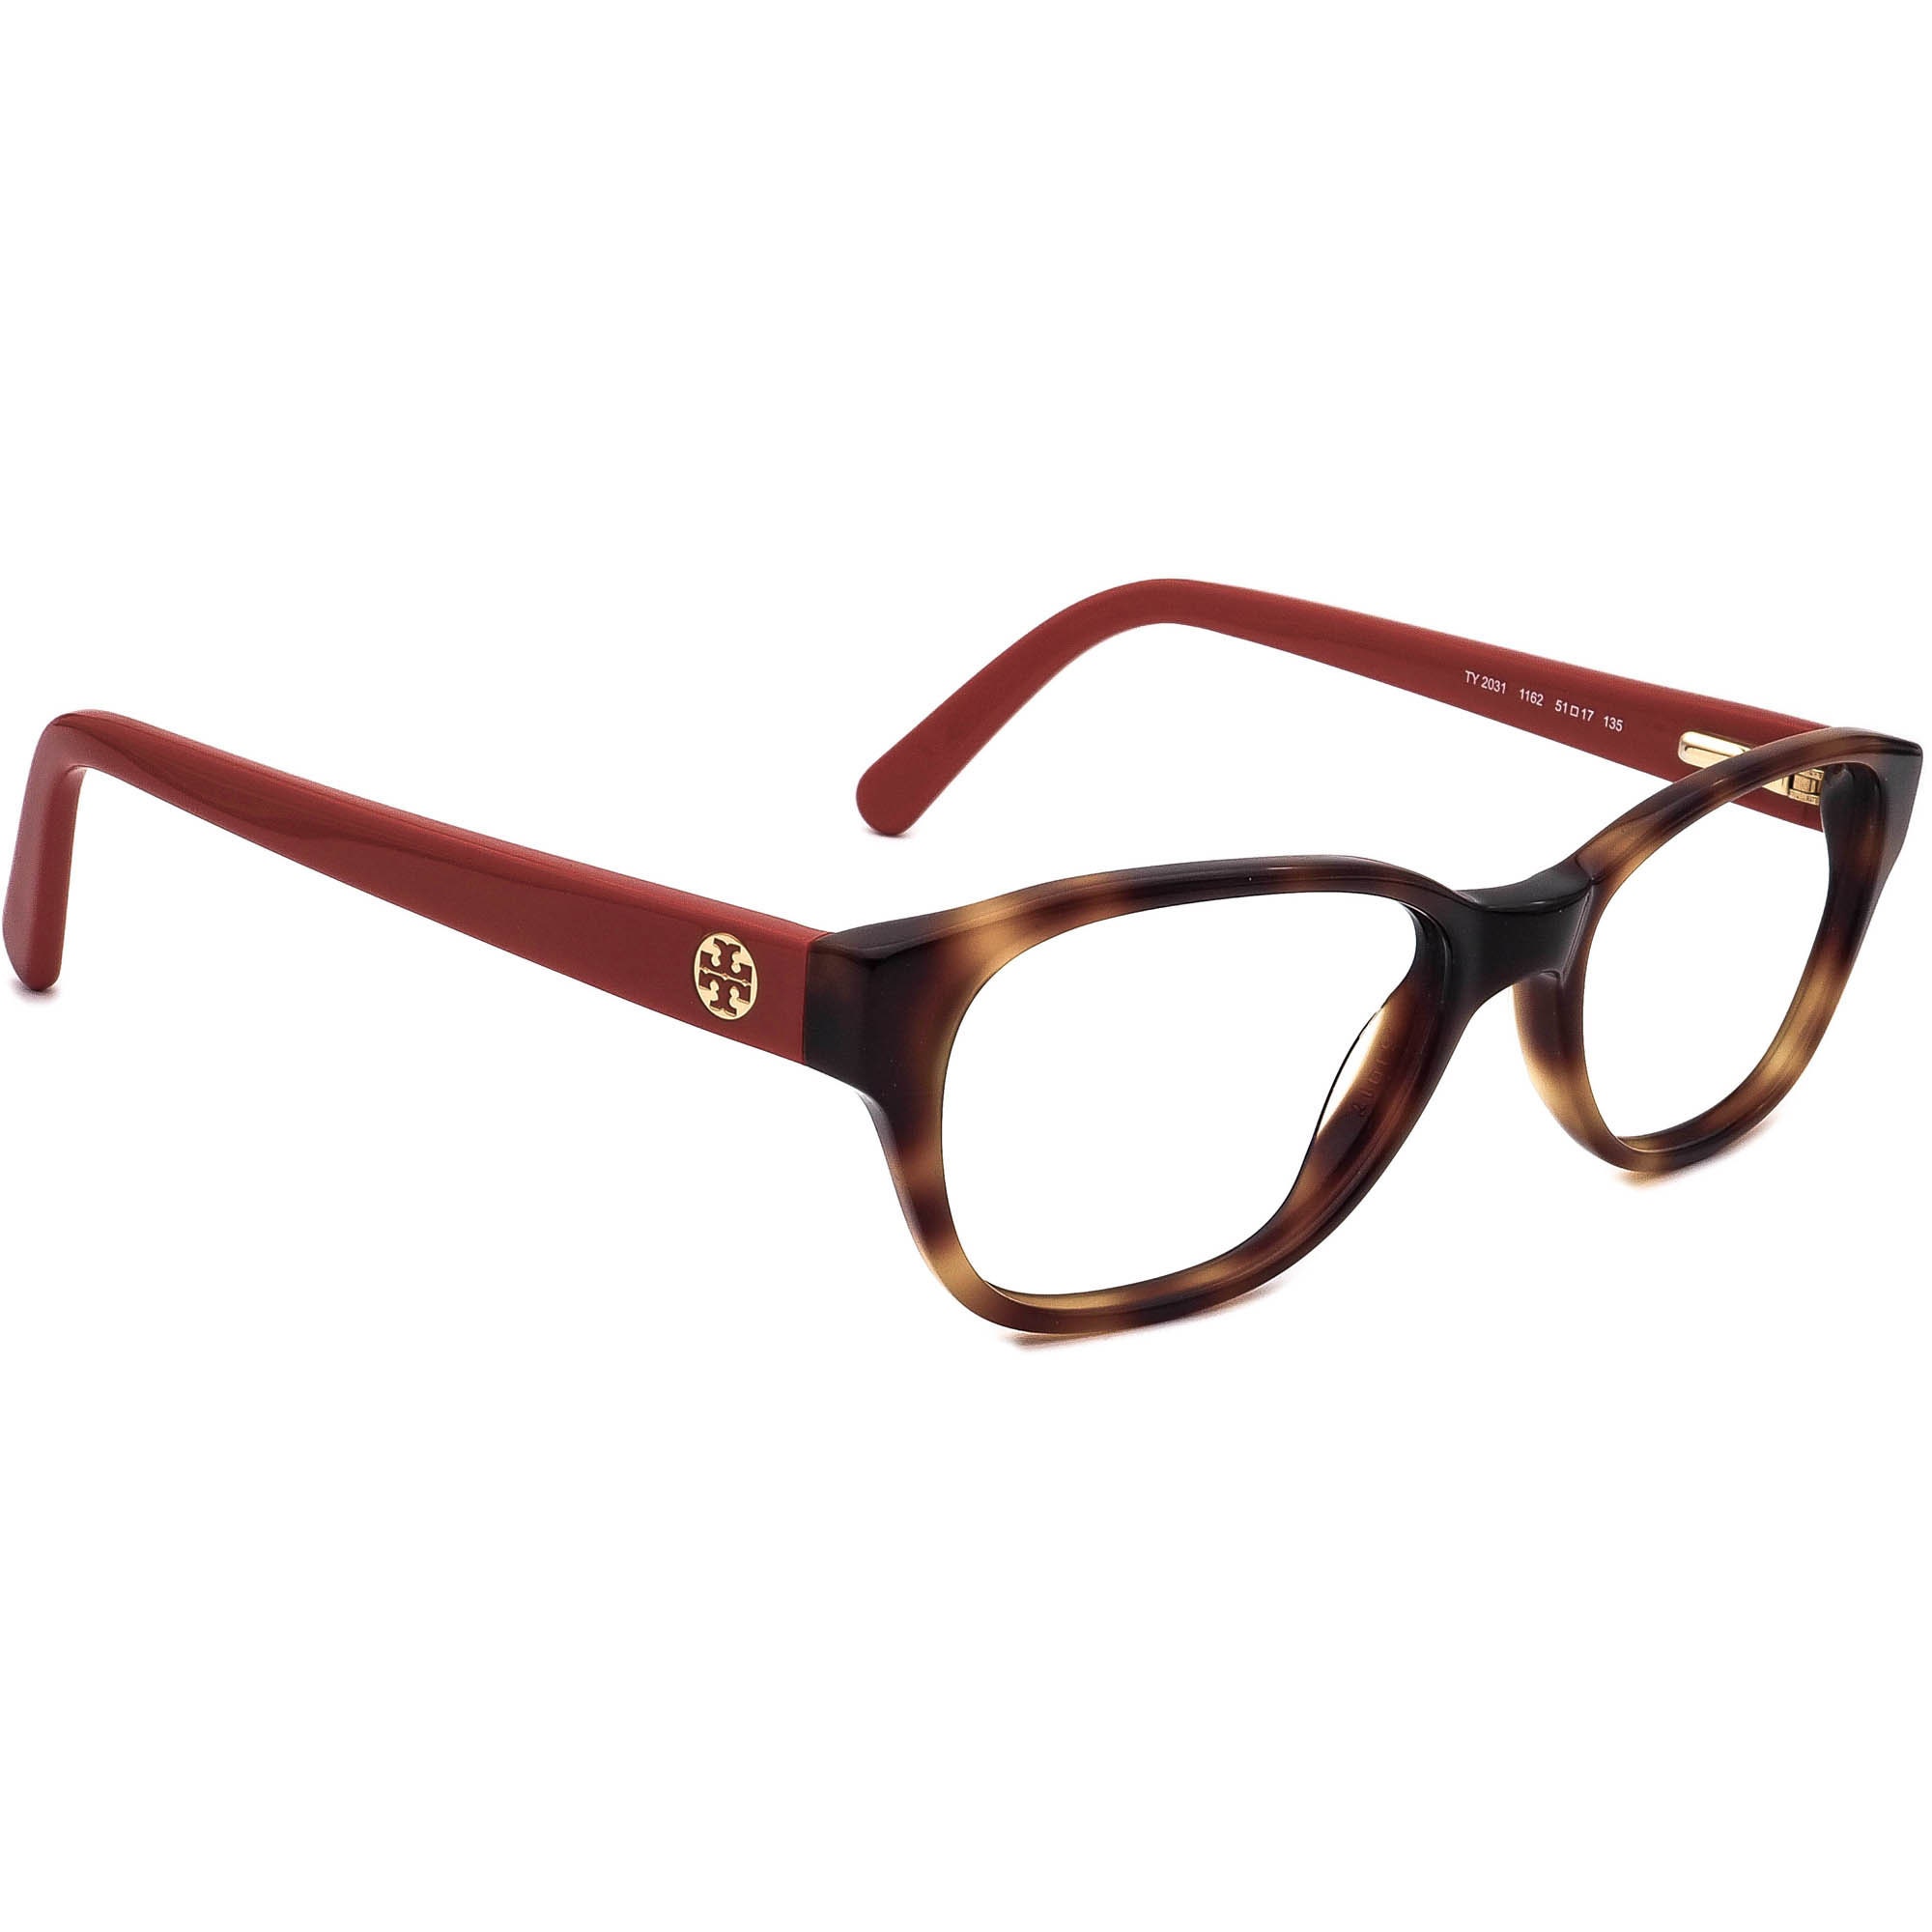 Tory Burch Eyeglasses TY 2031 1162 Tortoise/orange B-shape - Etsy